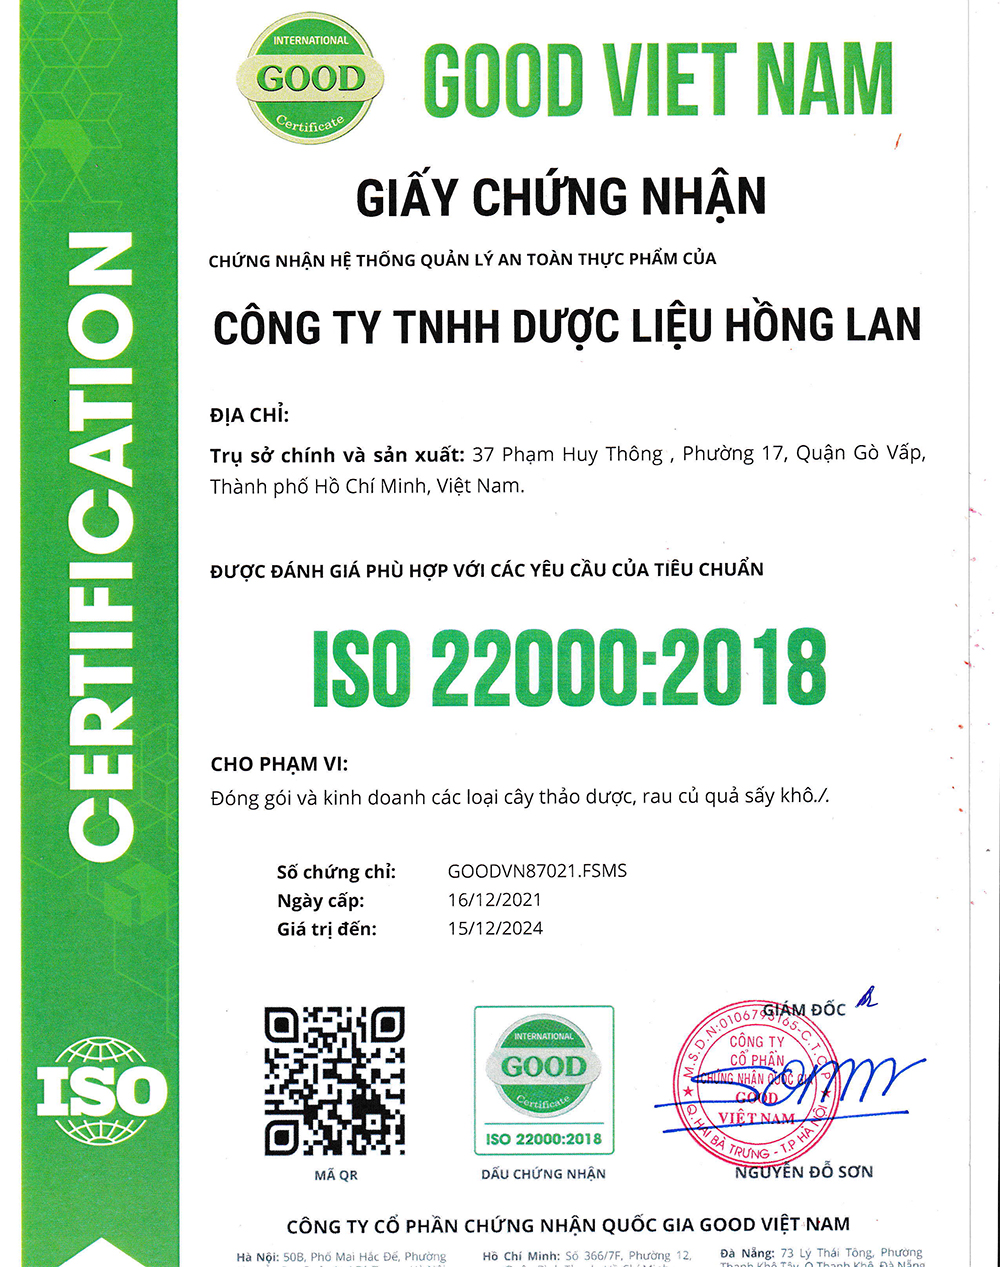 Trà túi lọc An Thận được sản xuất bởi Công ty TNHH Dược Liệu Hồng Lan theo hệ thống quản lý an toàn thực phẩm ISO 22000:2018 được cấp bởi công ty cổ phần chứng nhận Quốc Gia Good Việt Nam (Good Viet Nam Certification Joint Stock Company)